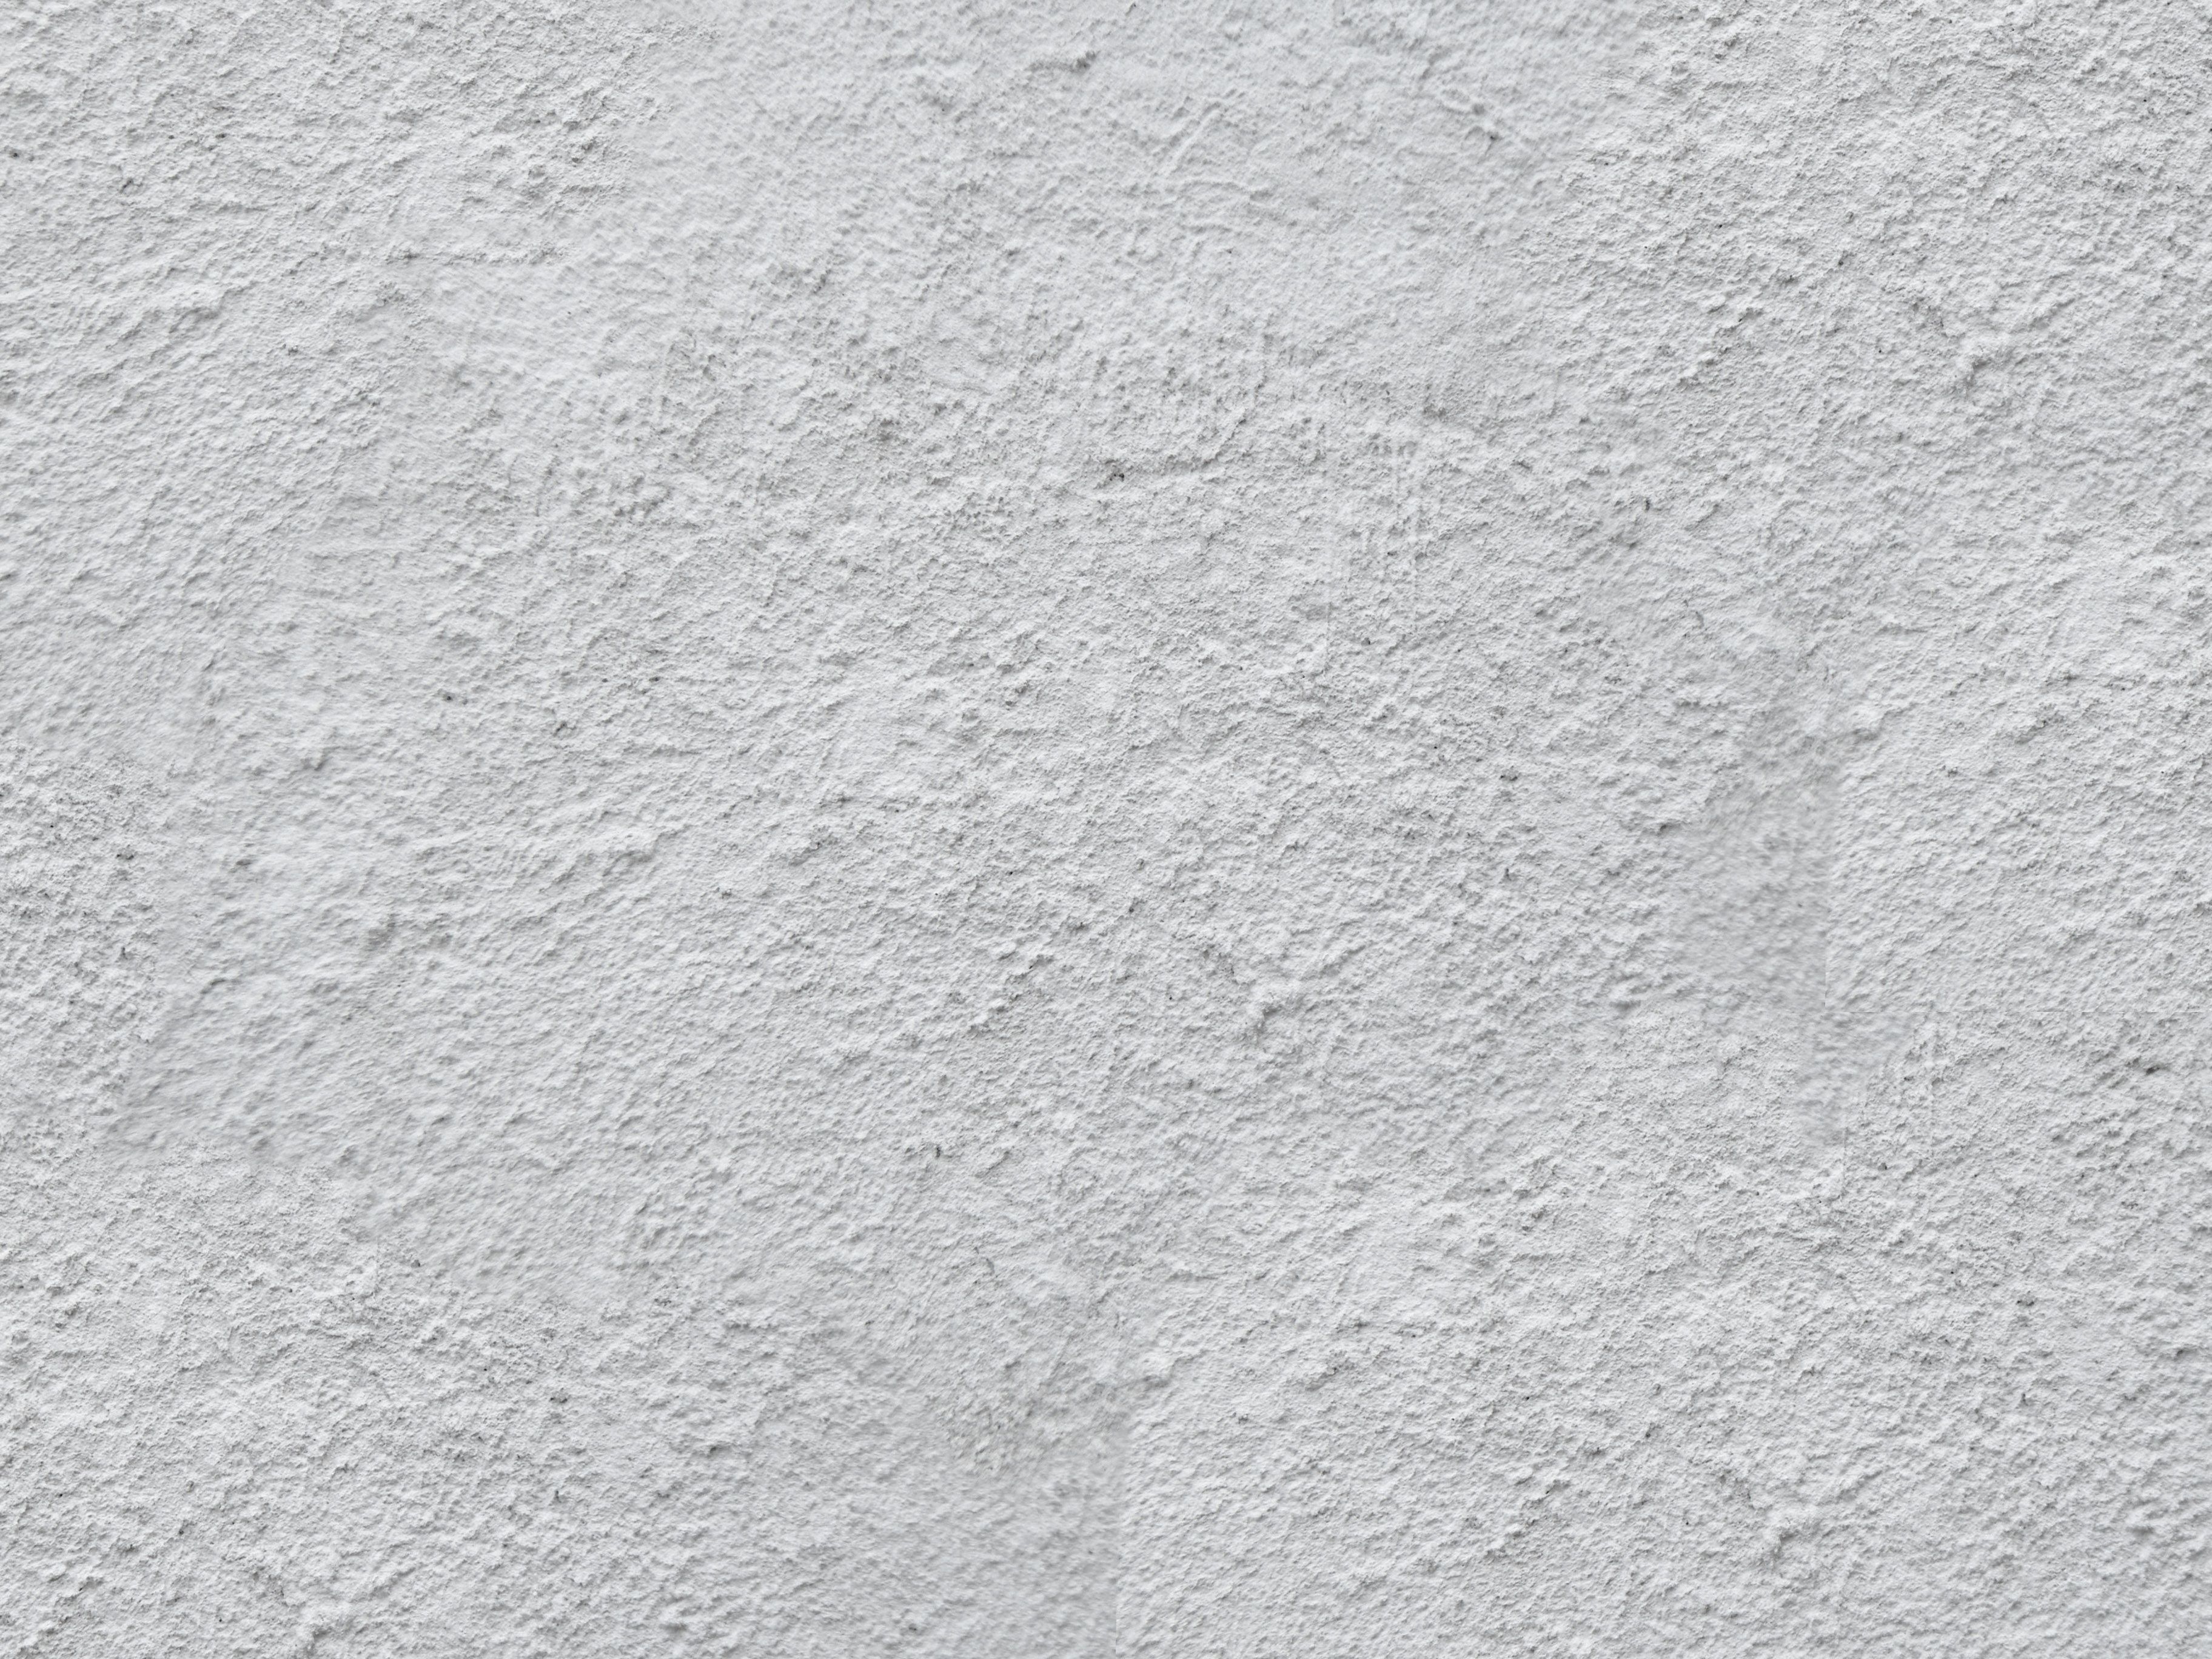 old plaster wall texture - Recherche Google | Brushes | Pinterest ...